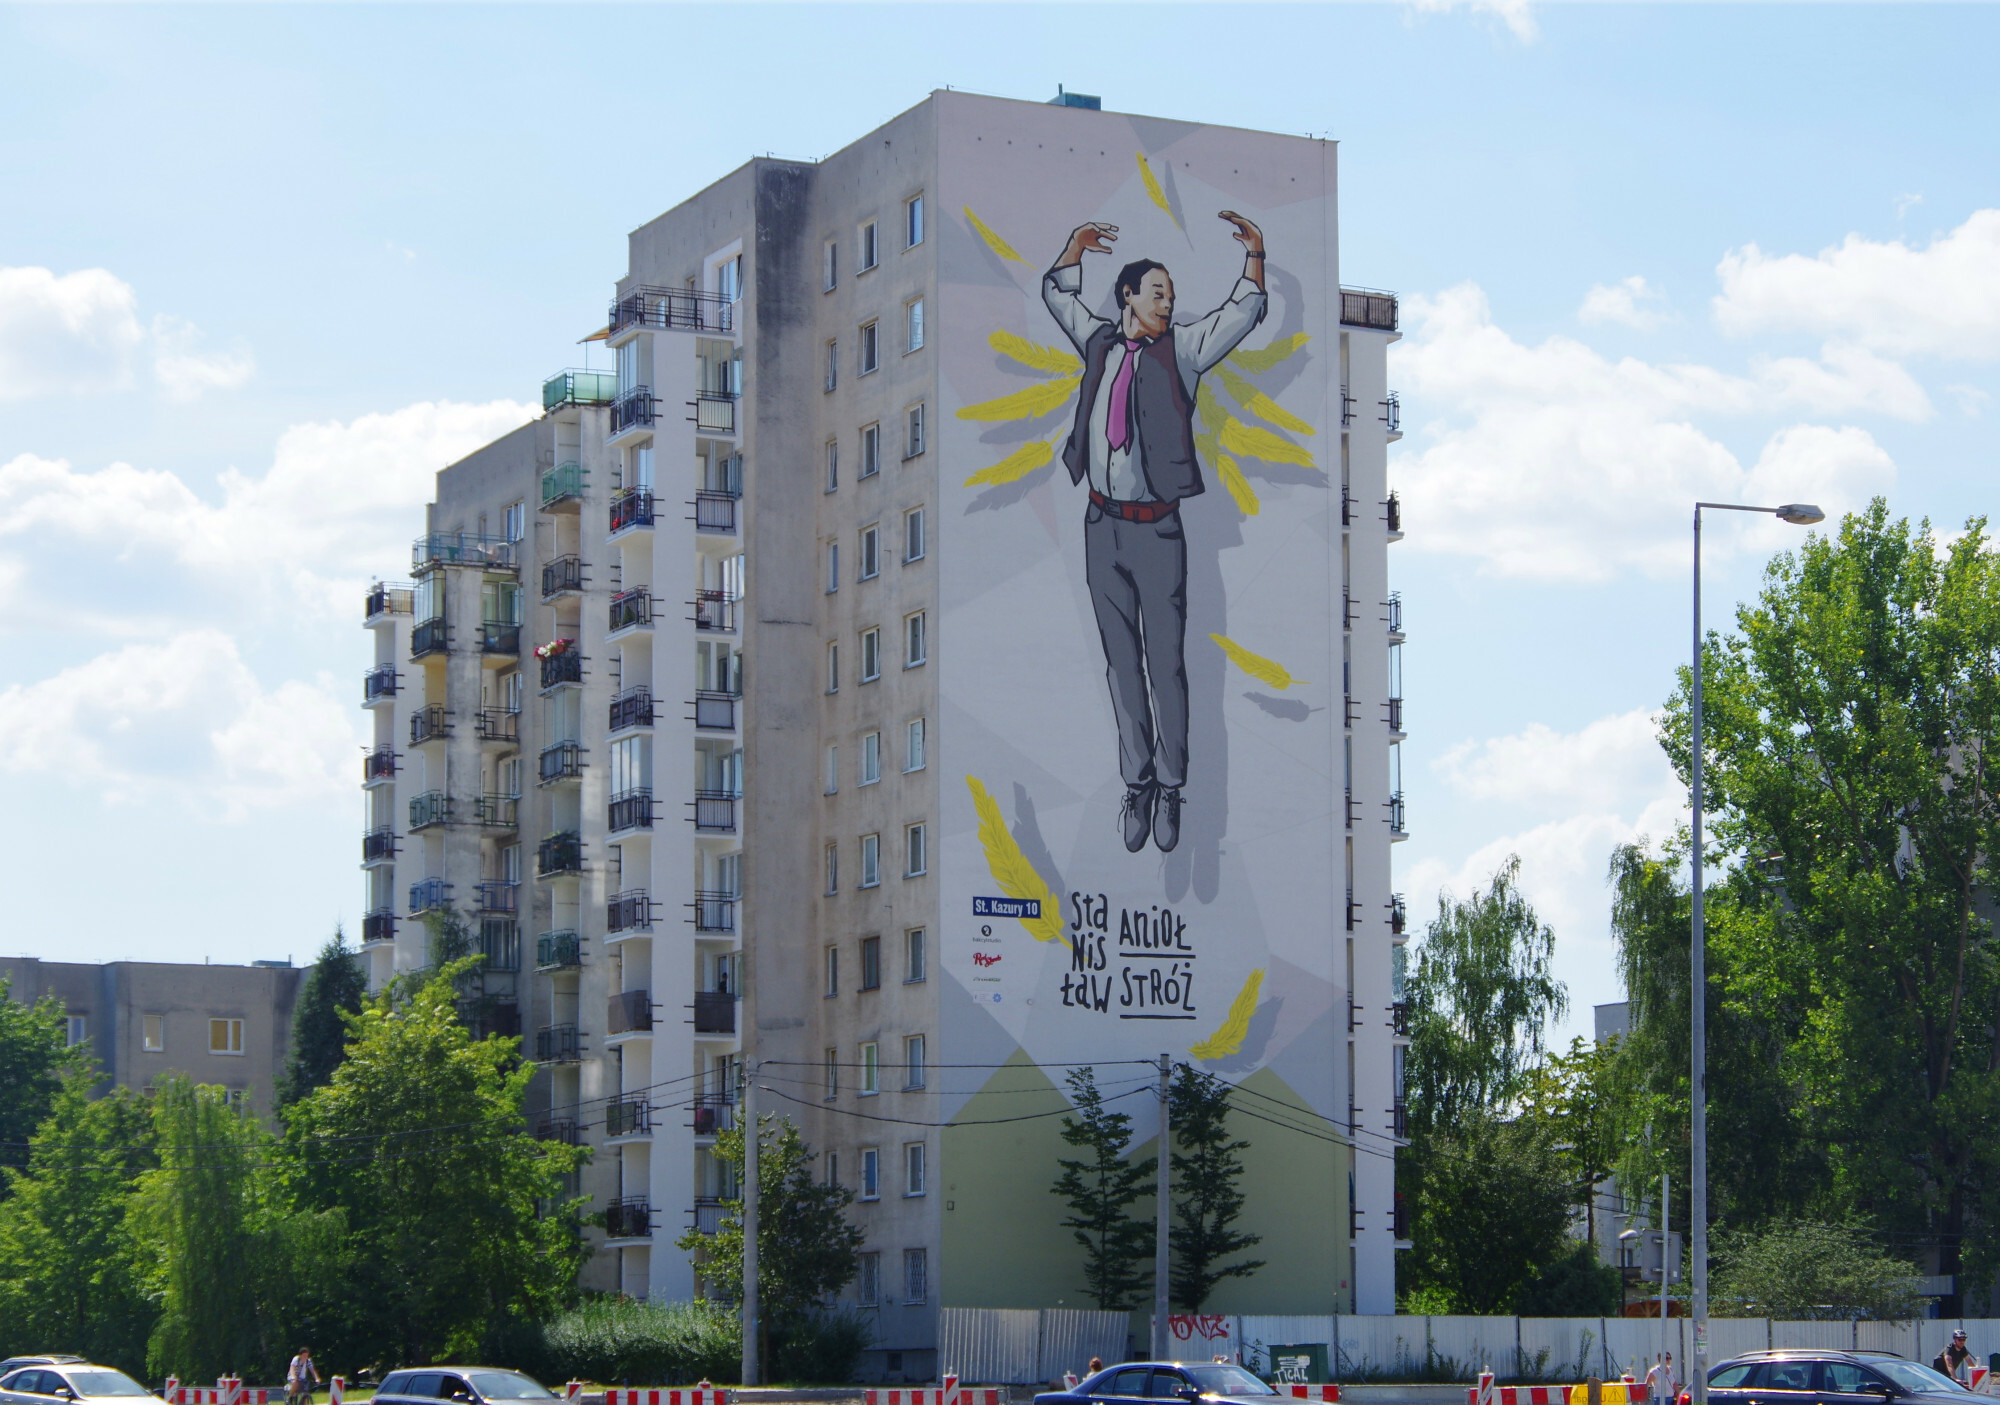 Blok z serialu "Alternatywy 4" jest naprawd na Ursynowie przy ul. Grzegorzewskiej 3